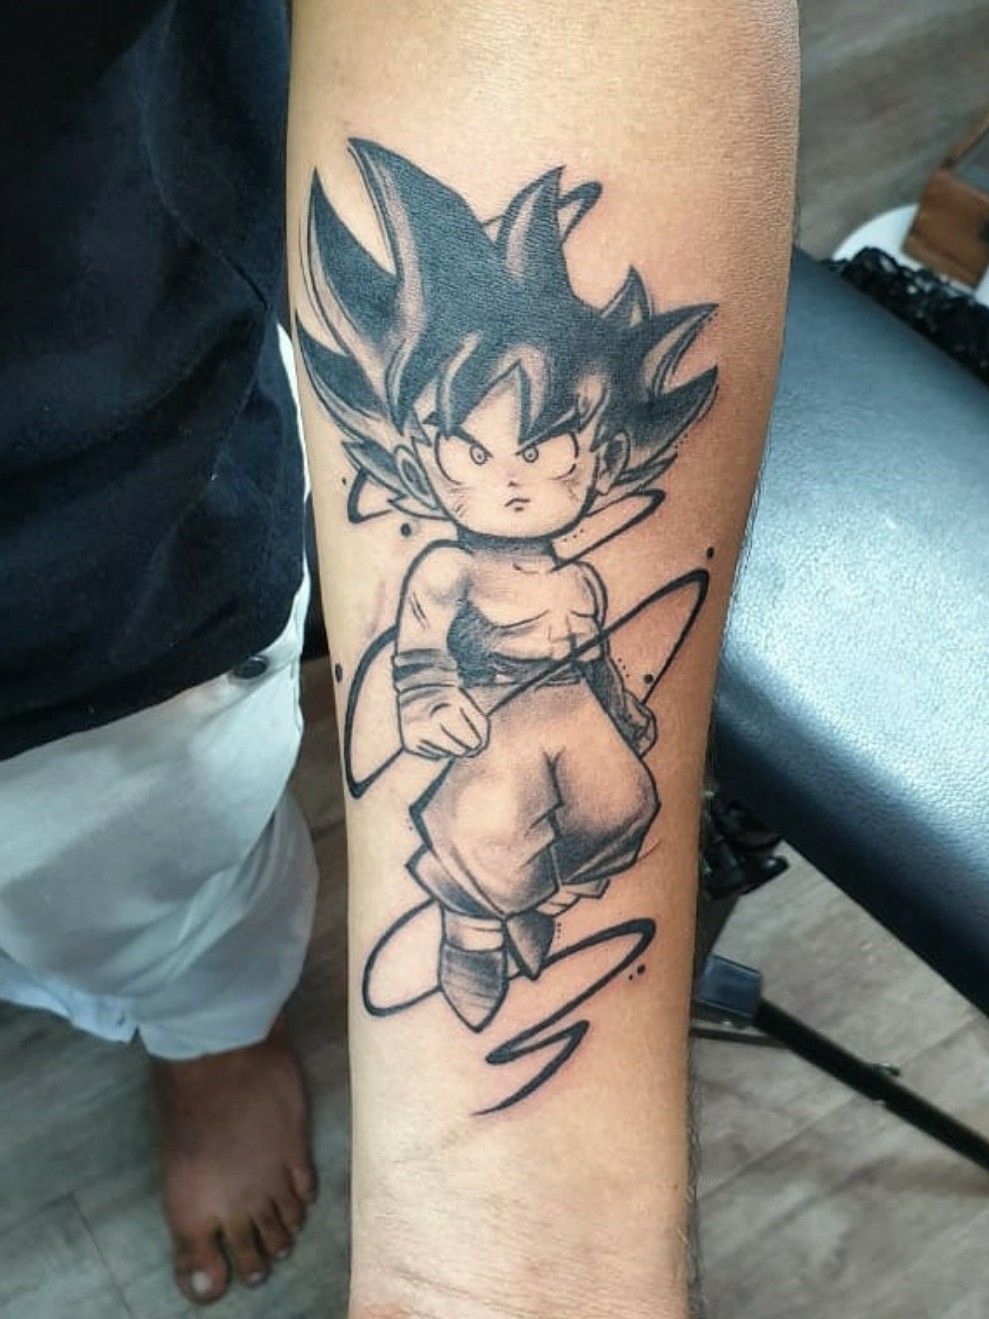 DBZ Super Saiyan 4 Goku tattoo